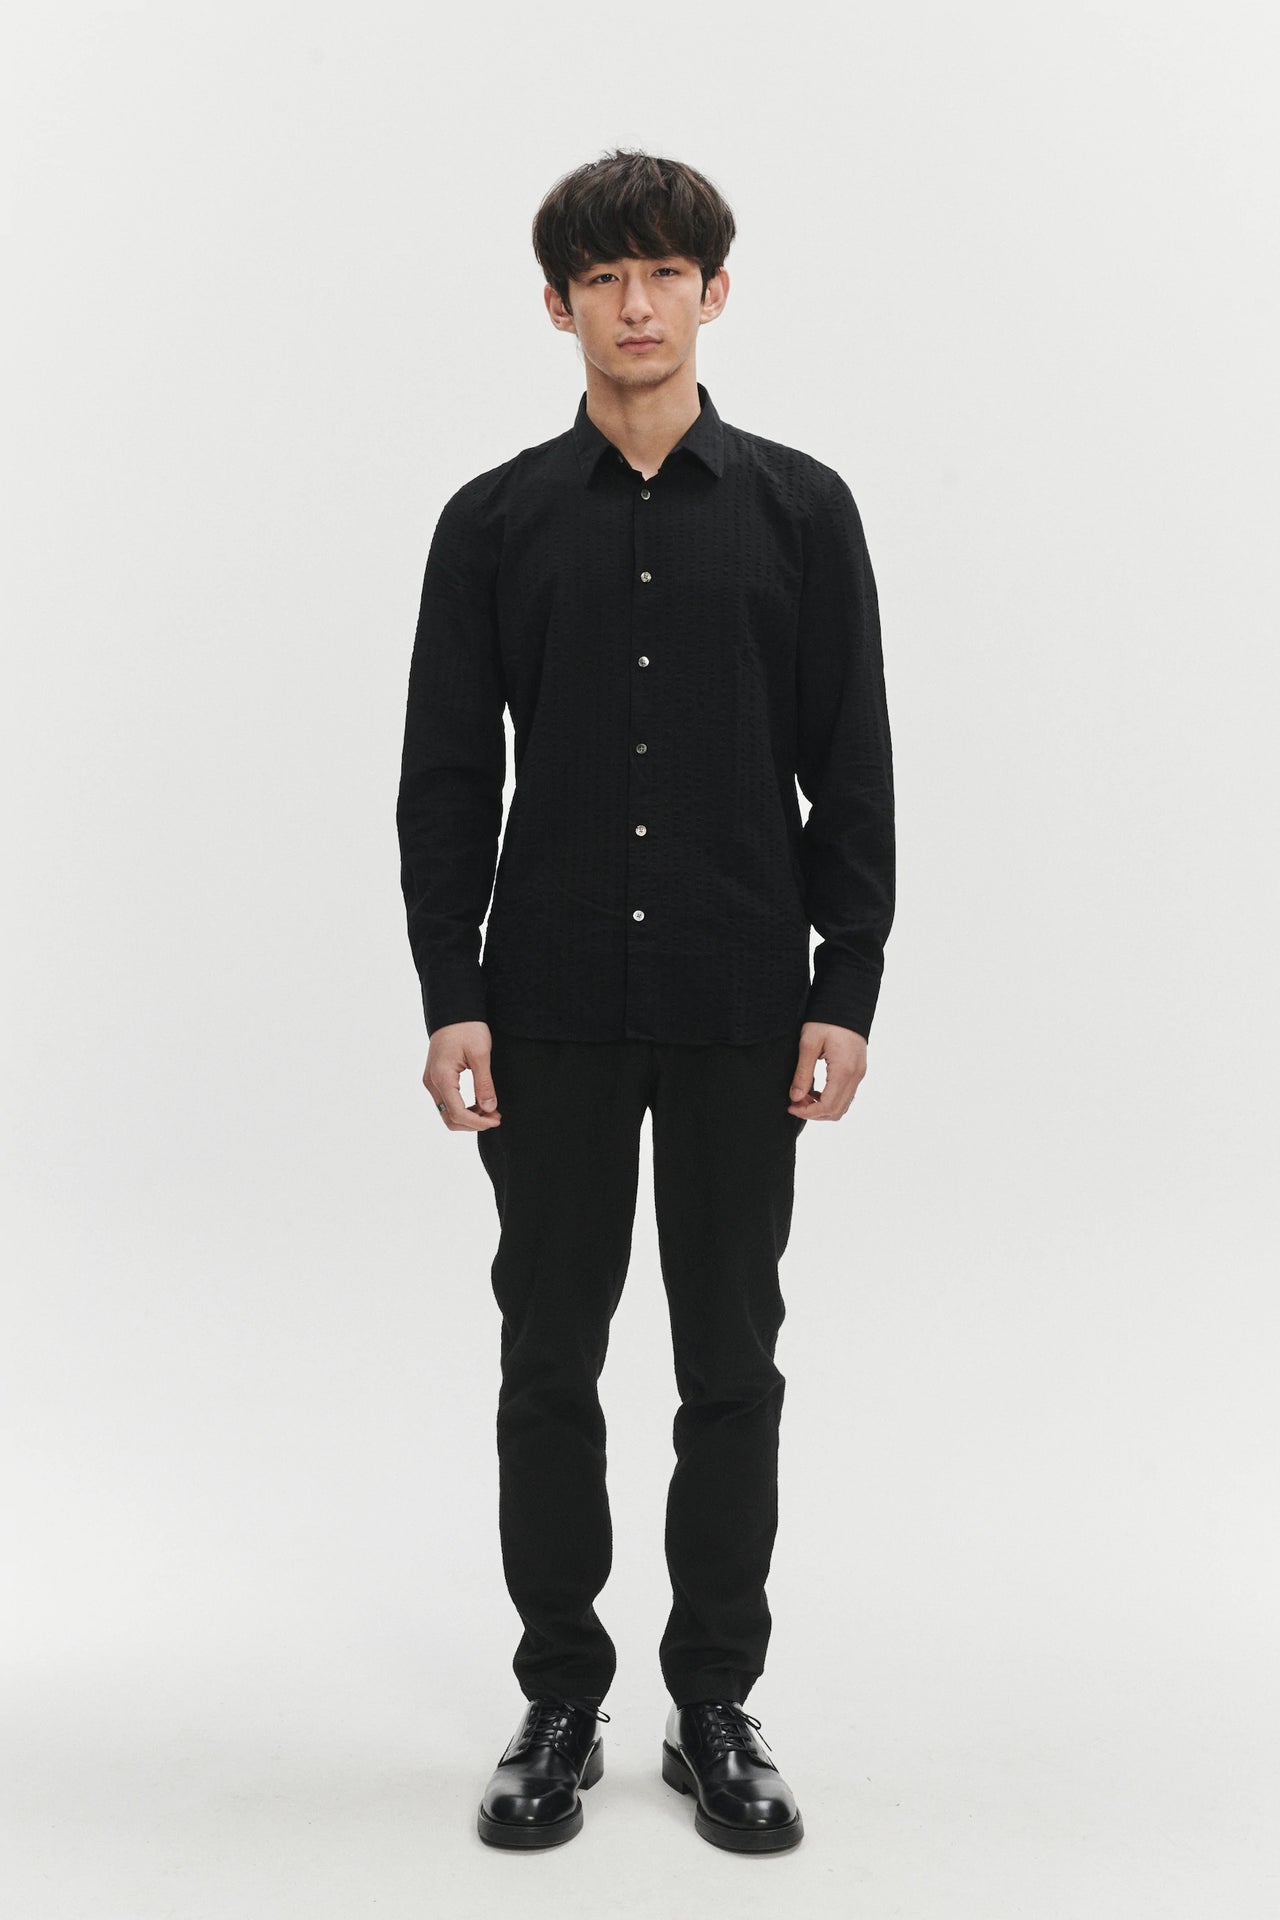 Feel Good Shirt in Black Fine Portuguese Tencel Seersucker